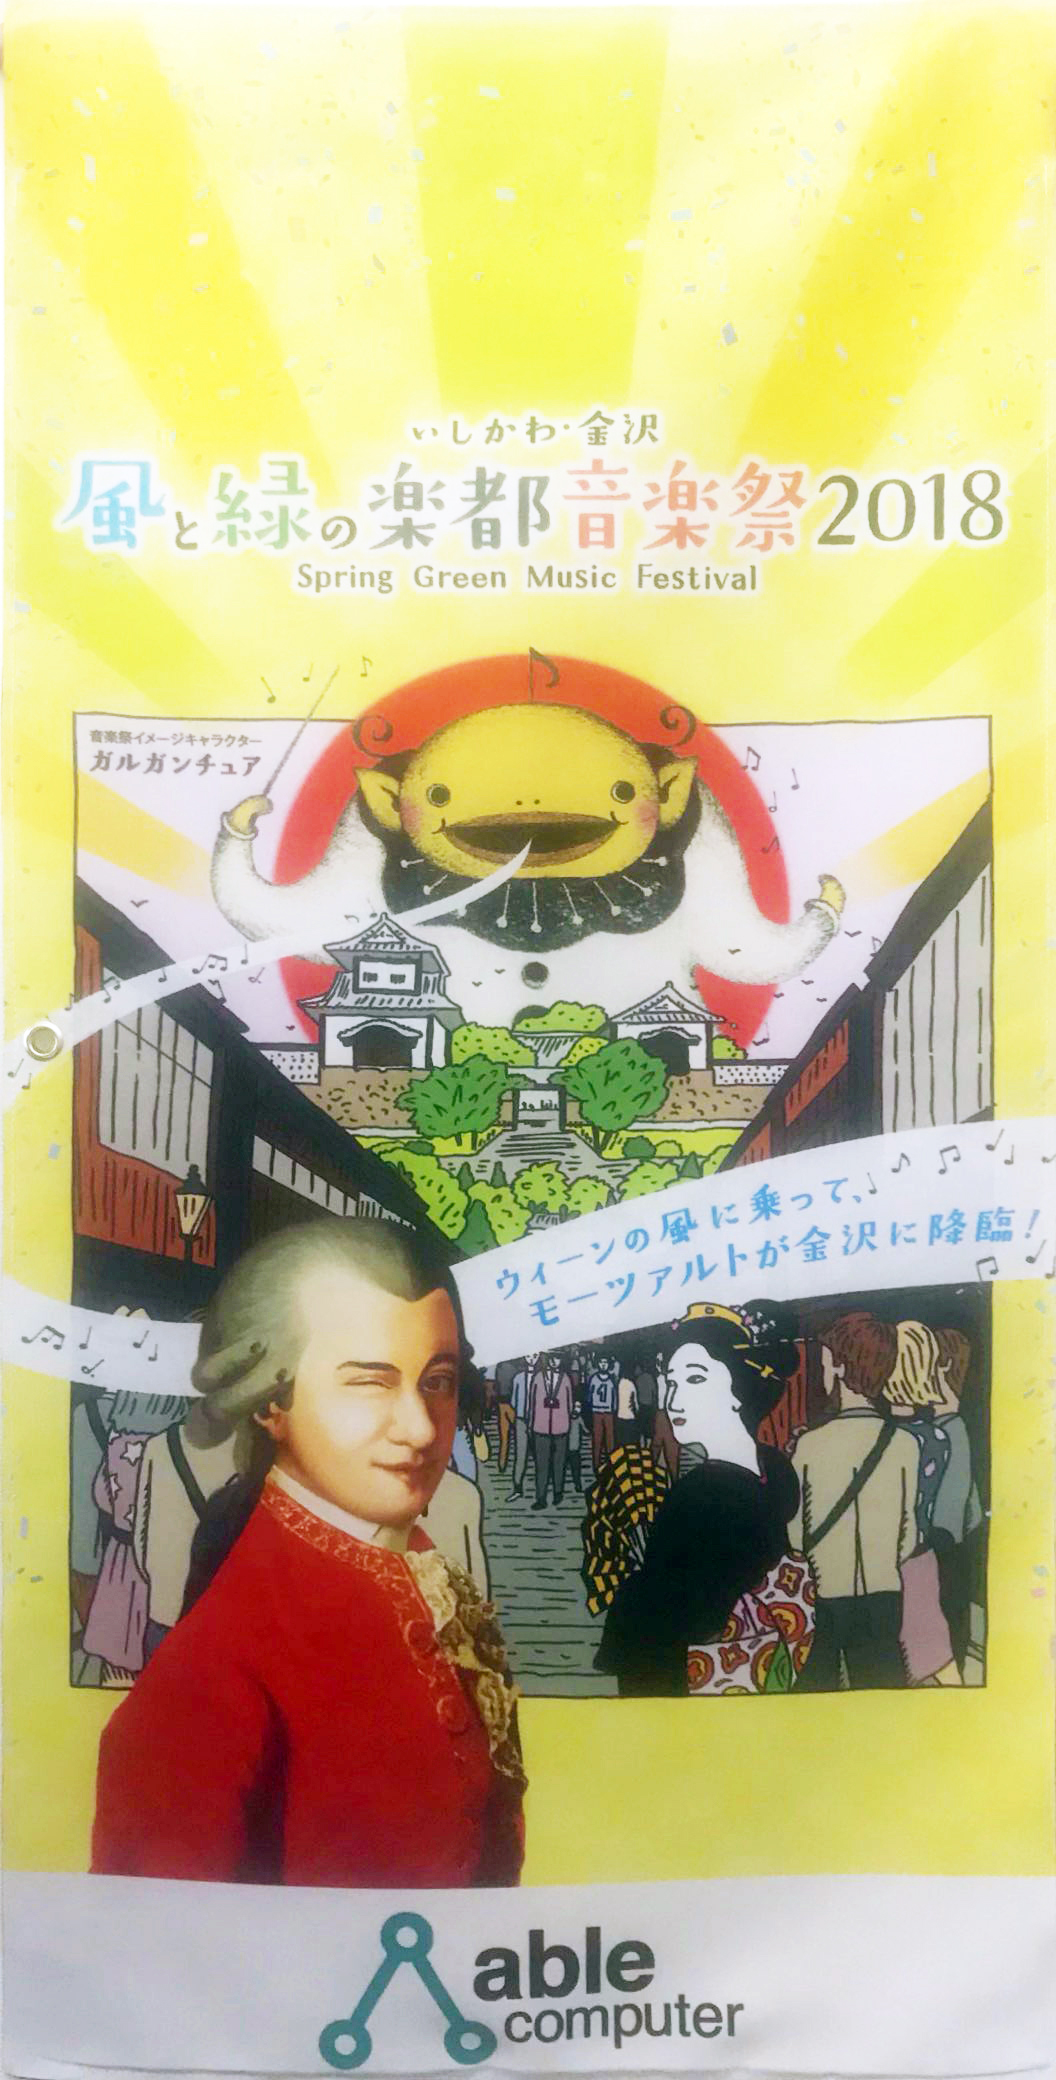 「いしかわ・金沢 風と緑の楽都音楽祭」のバナーフラッグ